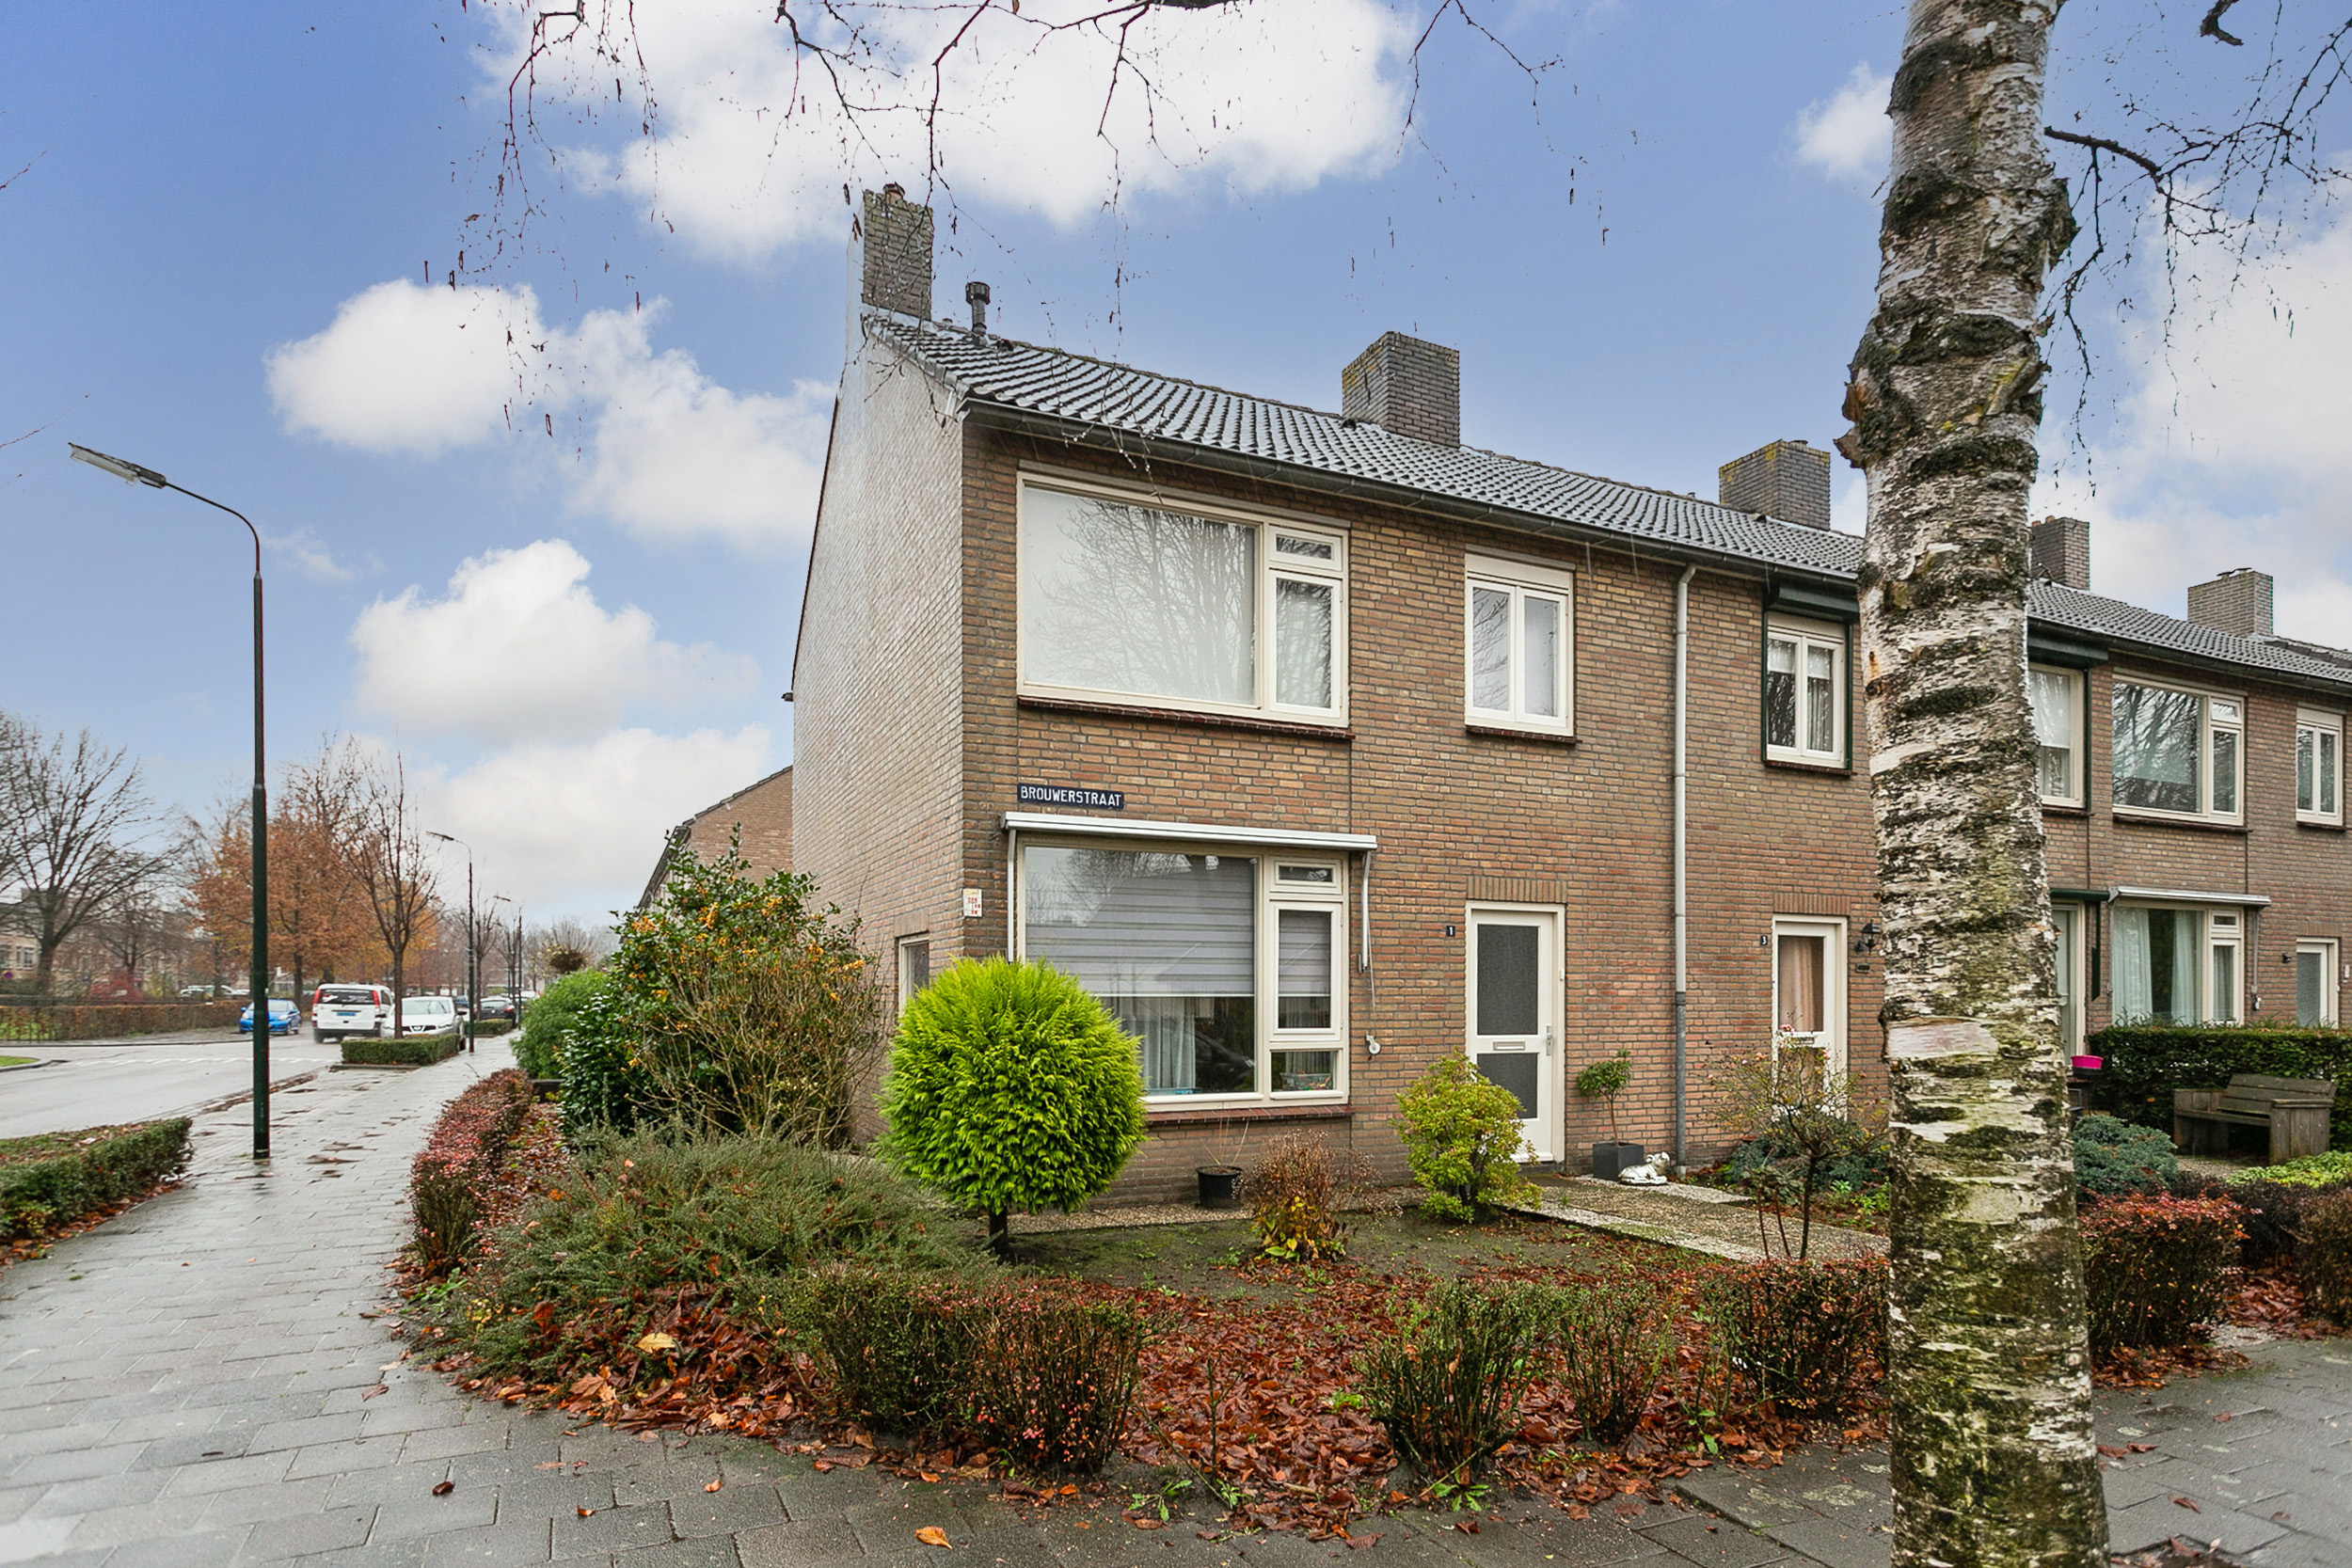 Brouwerstraat 1, 5061 ZE Oisterwijk, Nederland